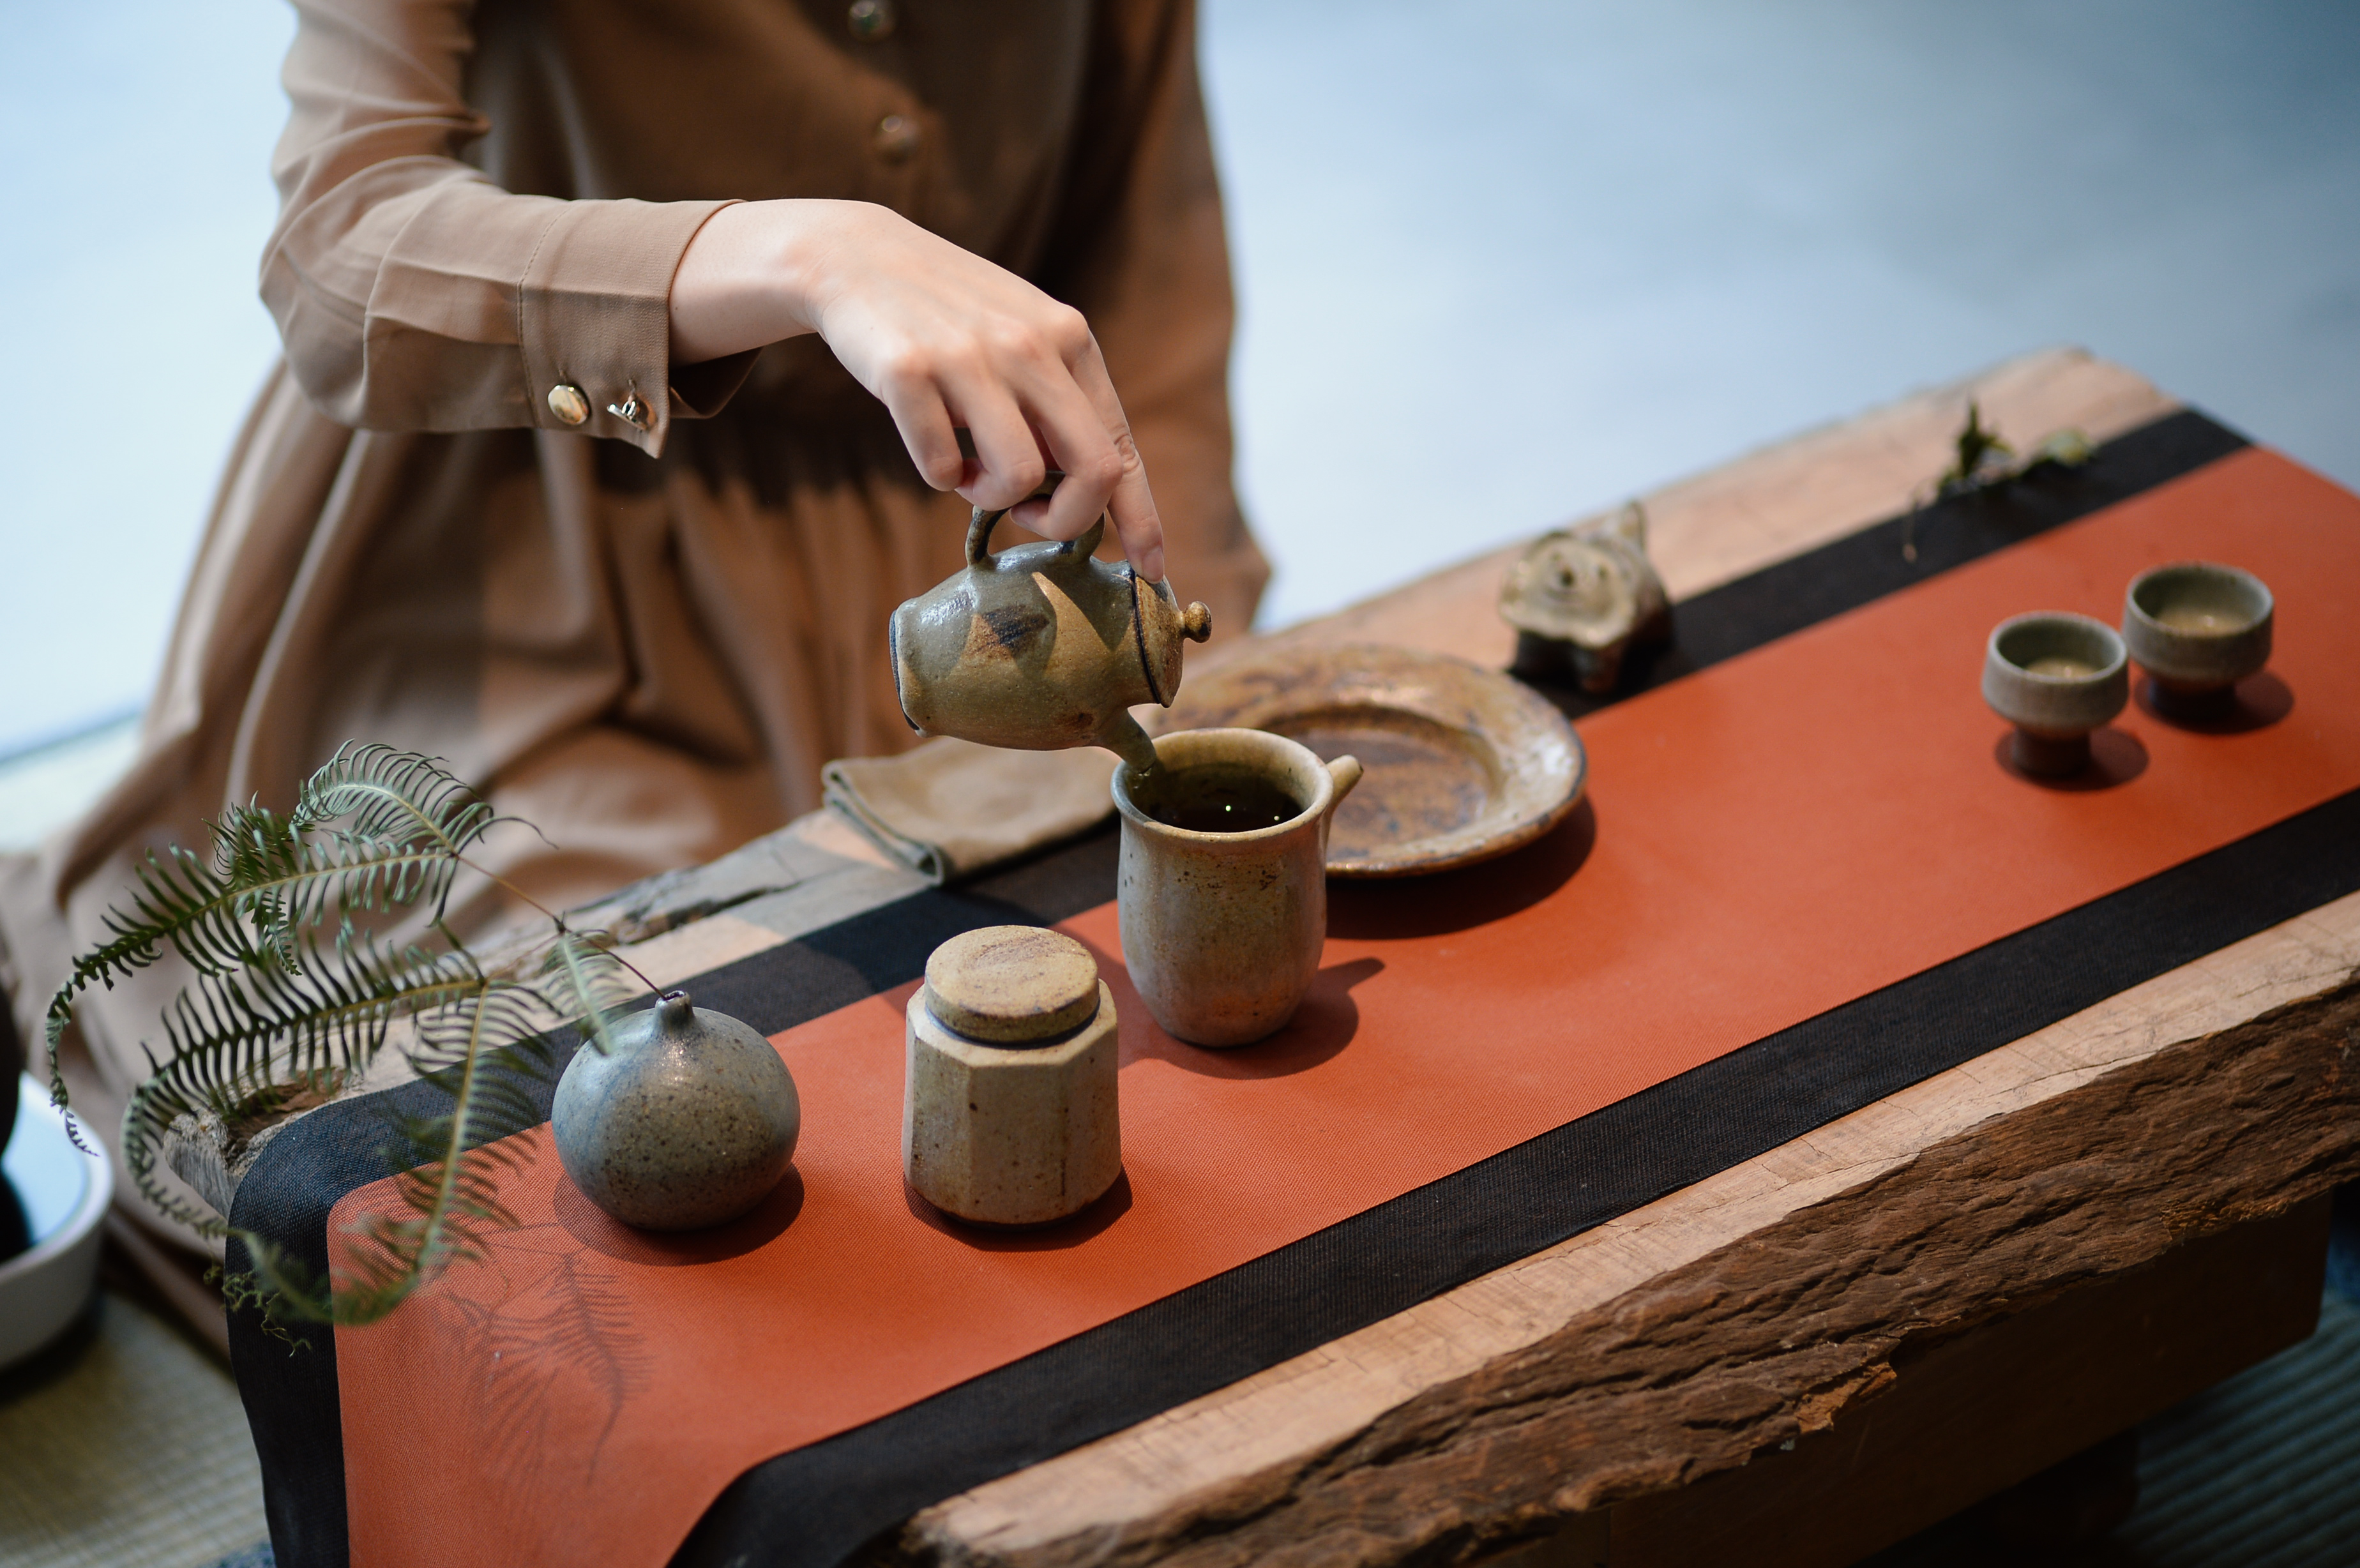 展 覽 開 幕 以 張 皓 硯 的 《 大 地 之 色 》 系 列 茶 具 呈 現 茶 席   攝 影 ︳ 陳 智 彥 